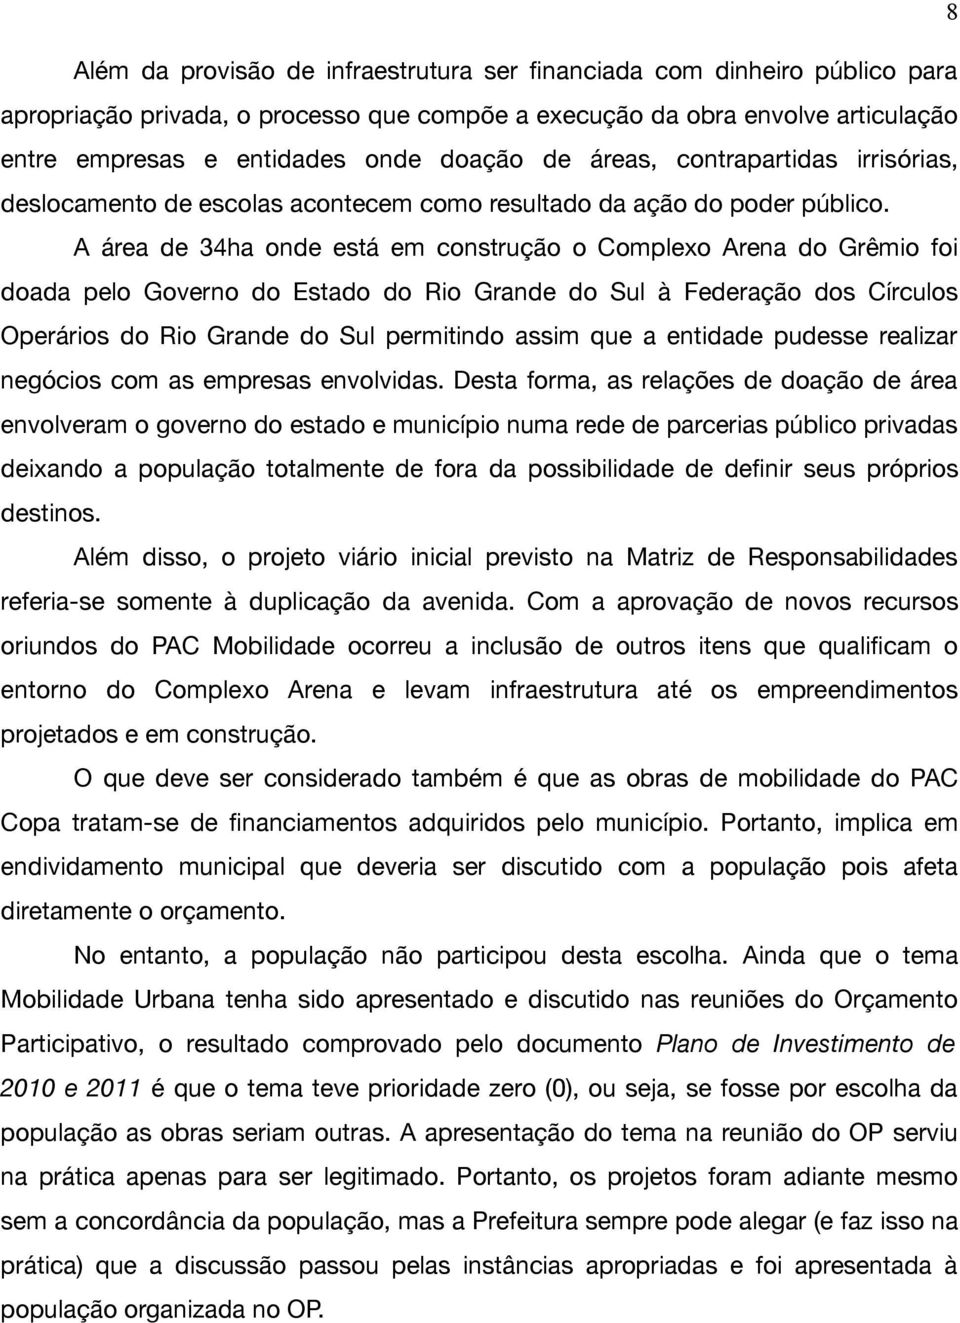 A área de 34ha onde está em construção o Complexo Arena do Grêmio foi doada pelo Governo do Estado do Rio Grande do Sul à Federação dos Círculos Operários do Rio Grande do Sul permitindo assim que a